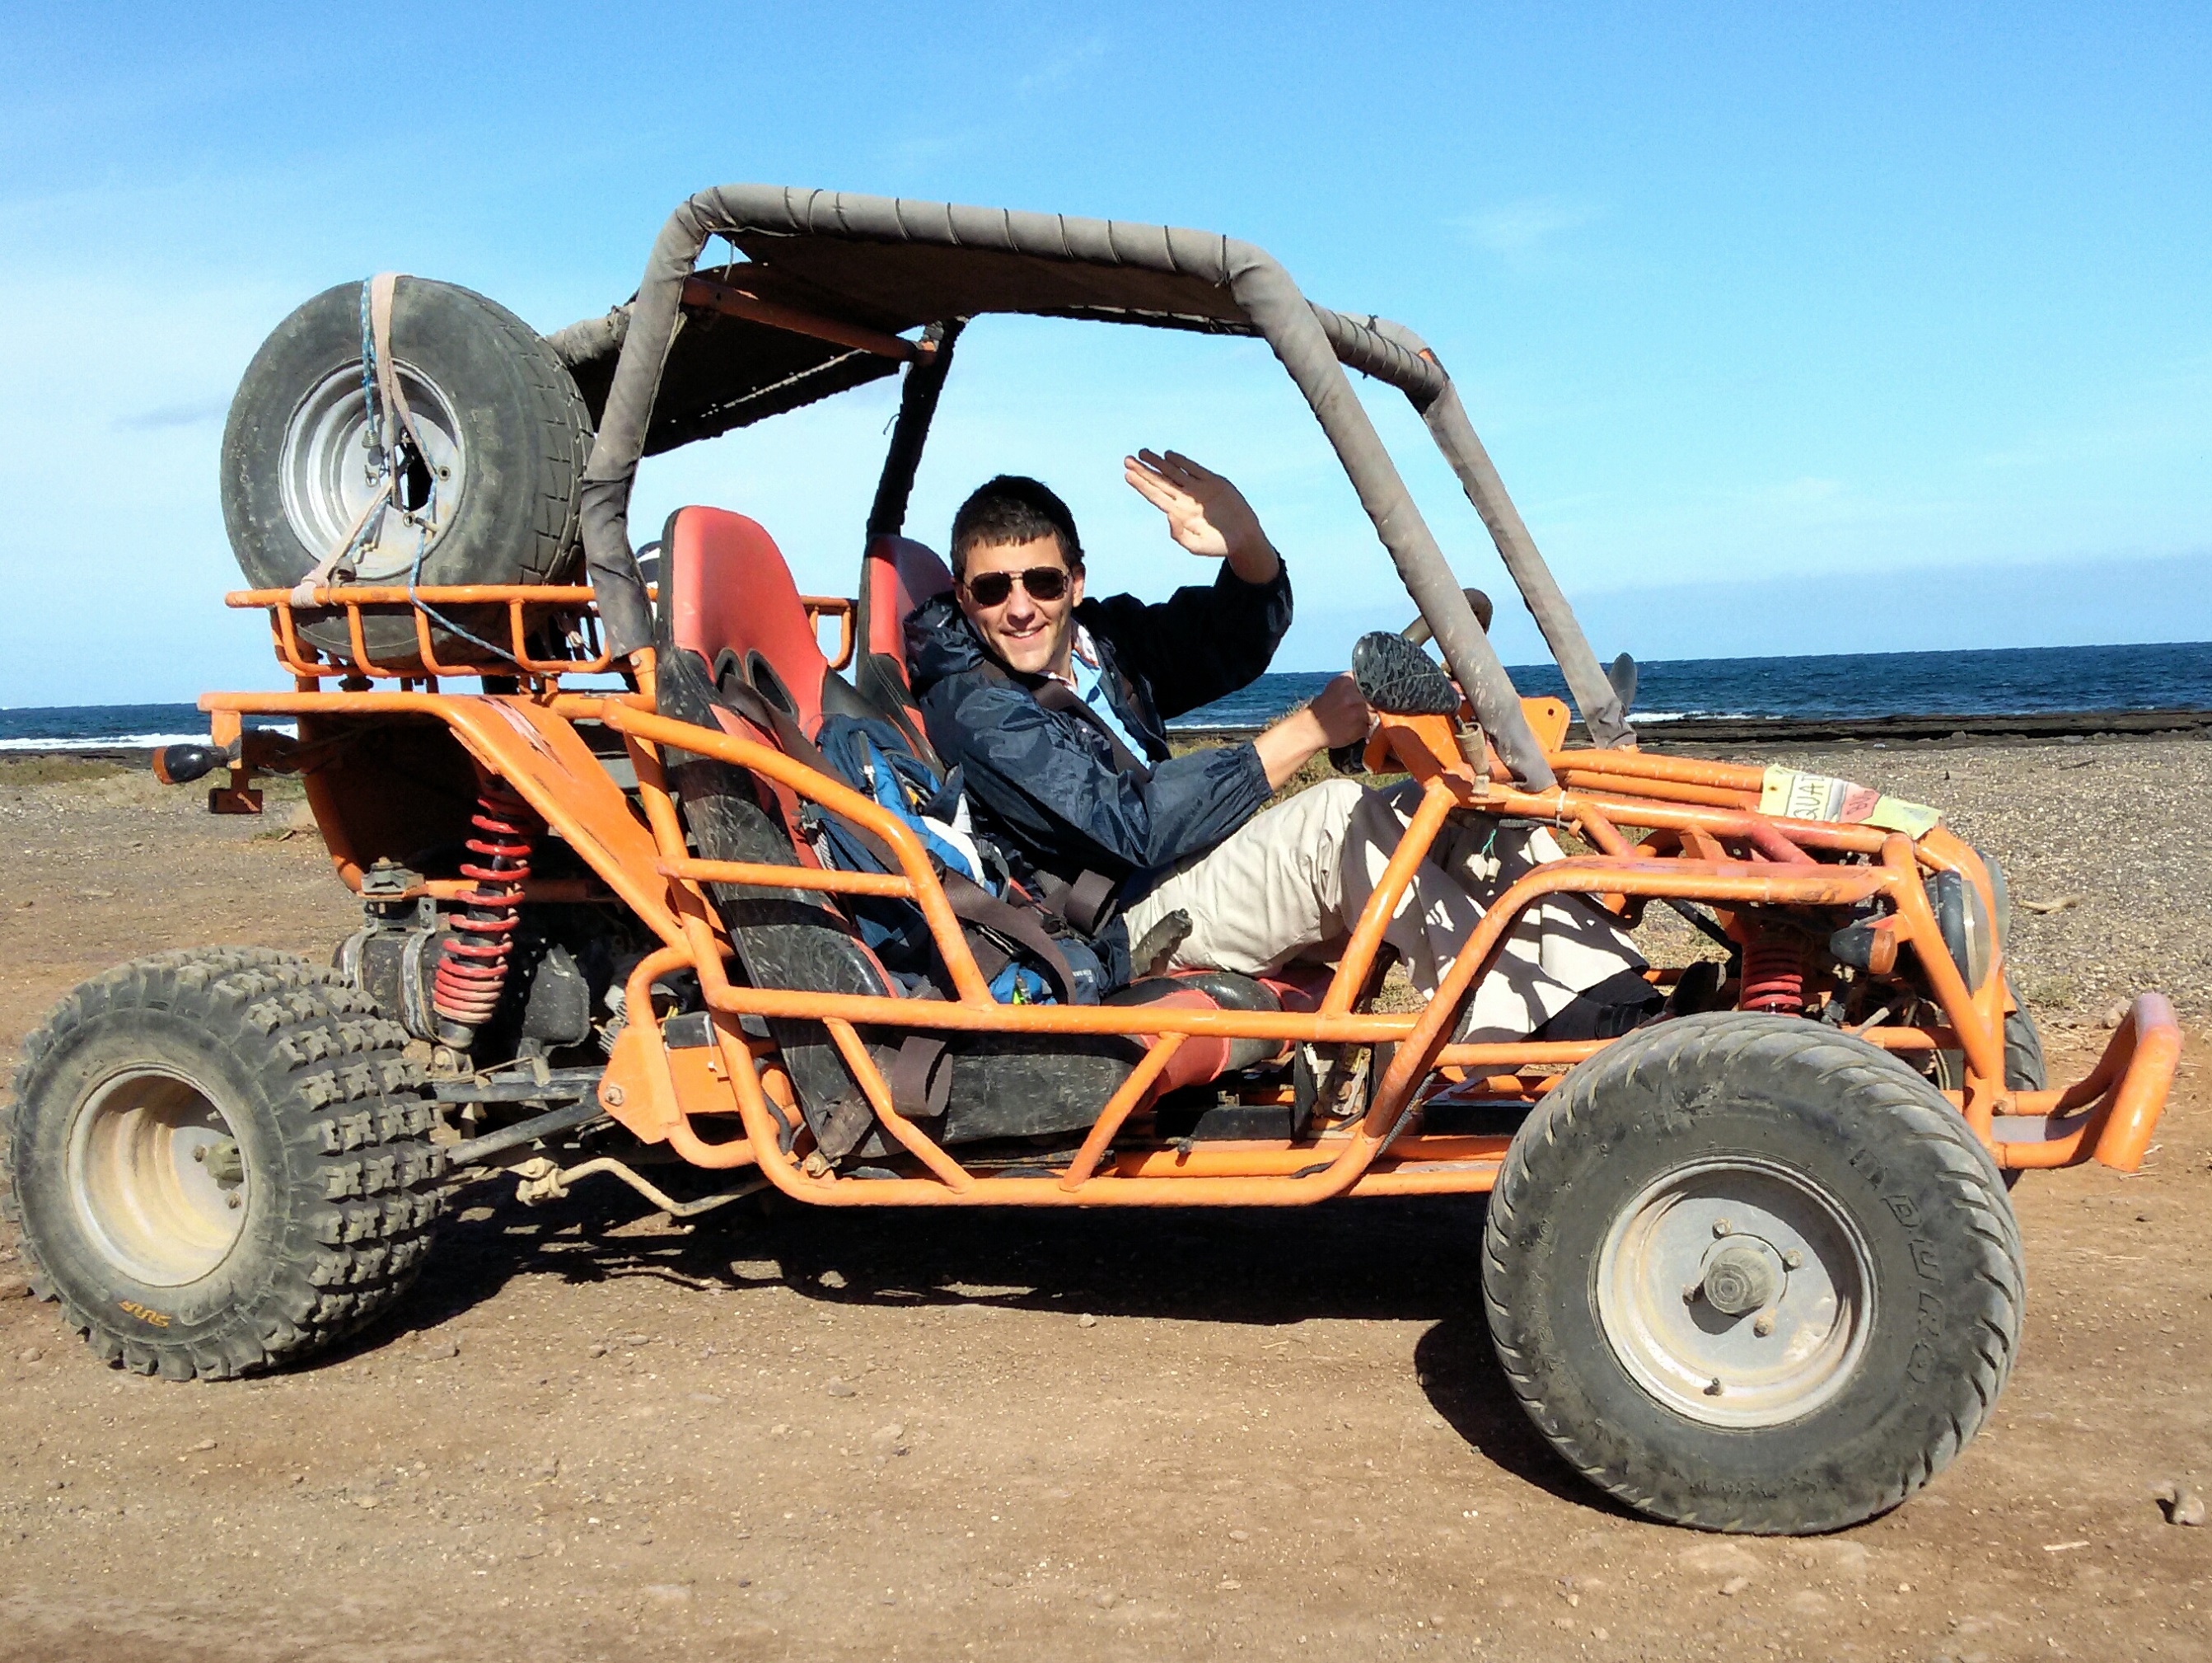 Mein Schiff Ausflug: Buggytour auf Fuerteventura 